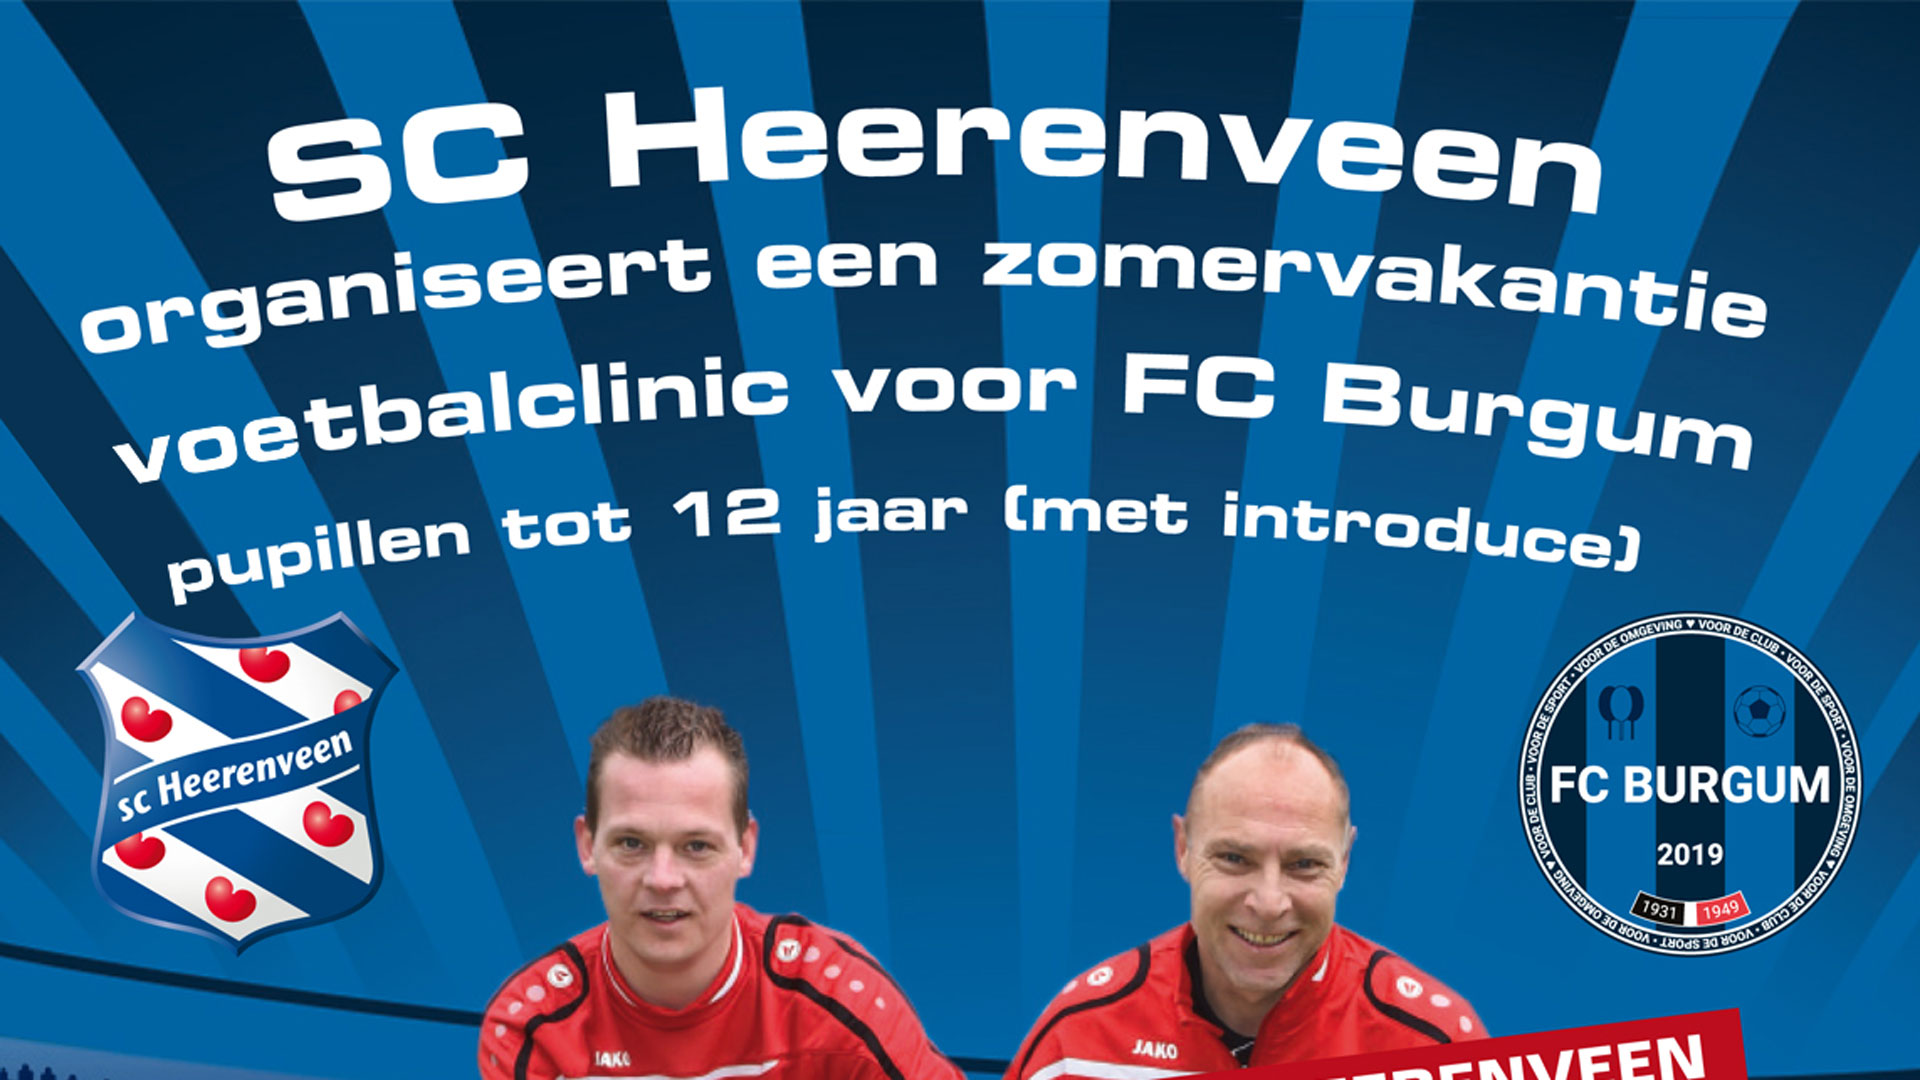 SC Heerenveen organiseert voetbalclinic voor jeugd tot 12 jaar van FC Burgum